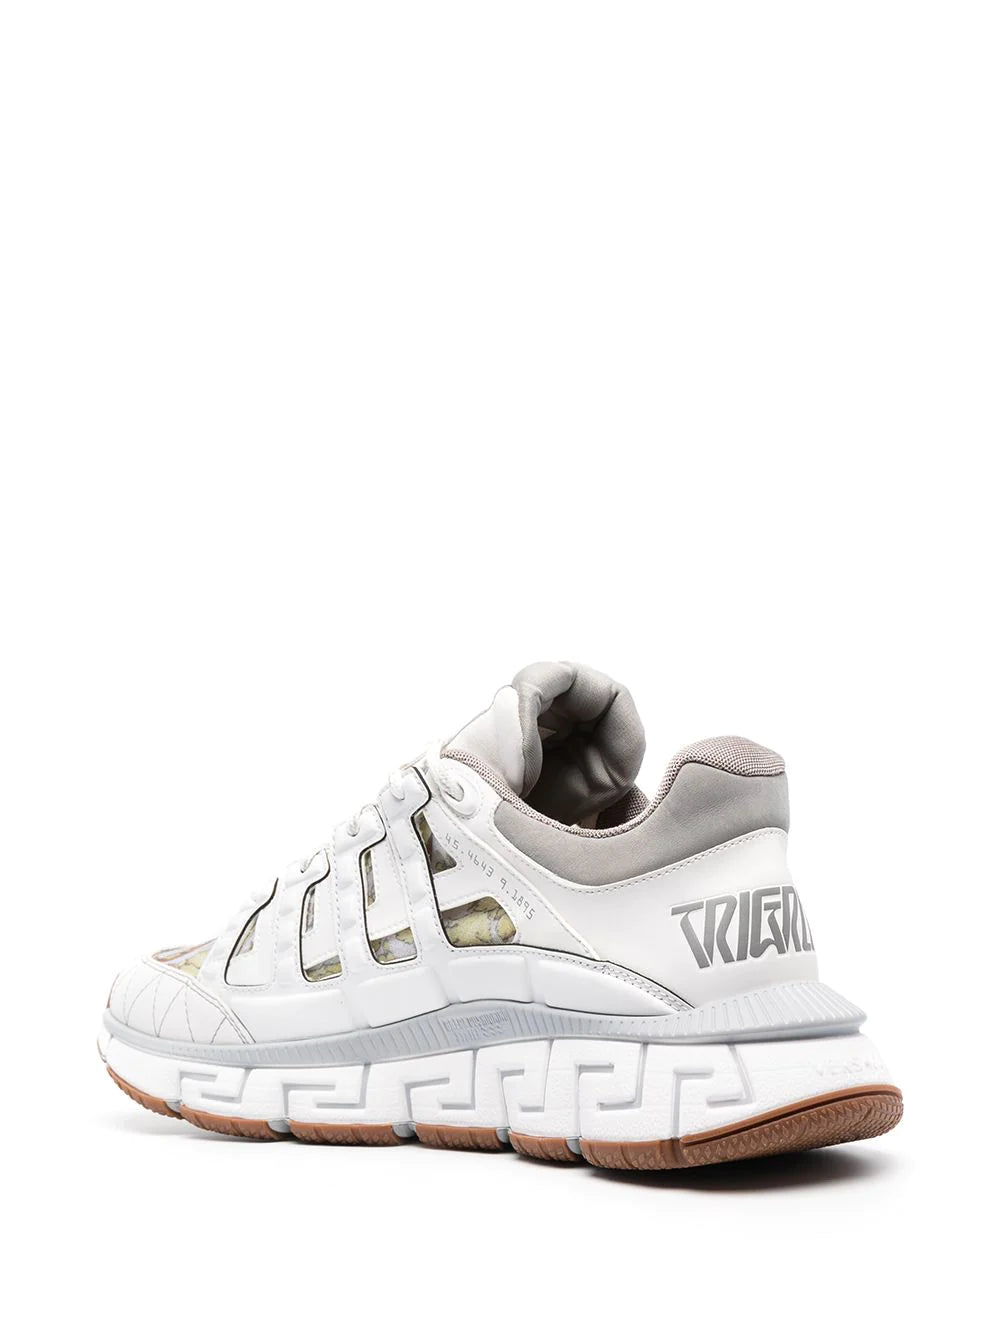 Versace White Barocco Trigreca Sneakers